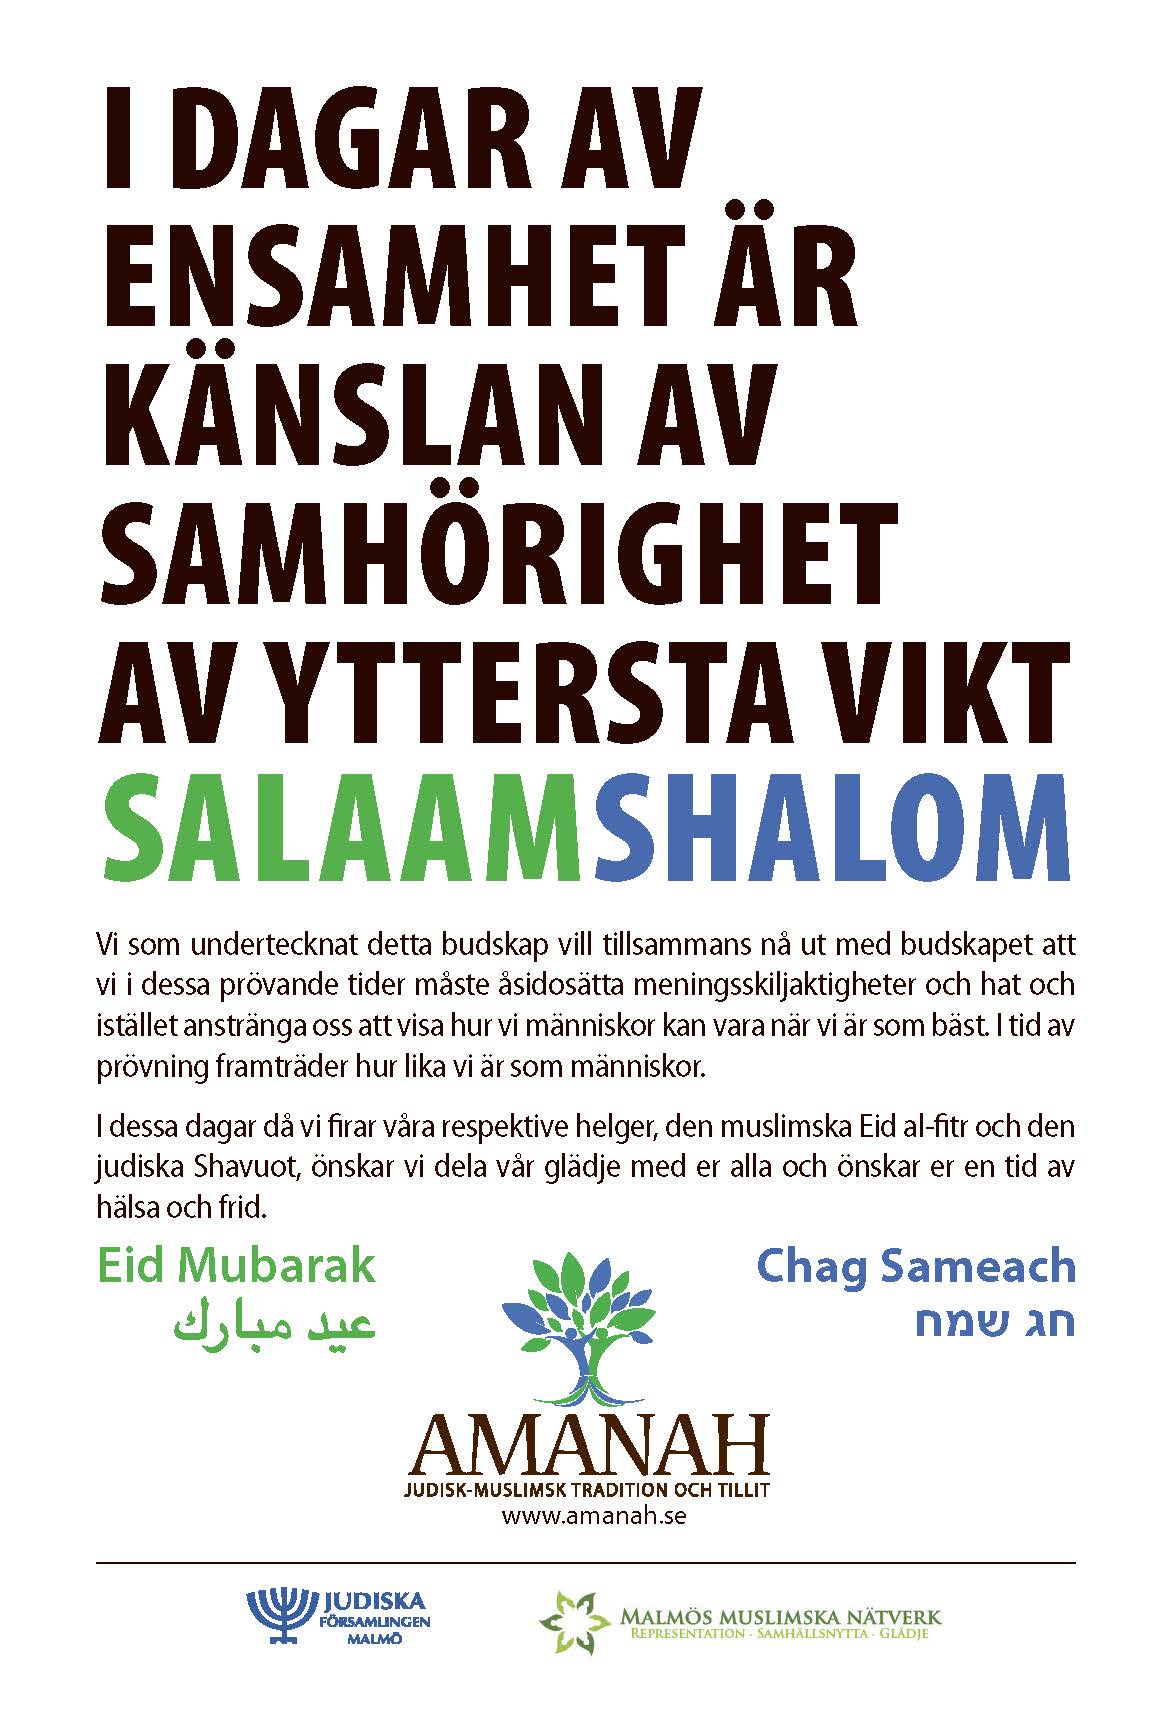 Judisk-muslimsk annons om samhörighet